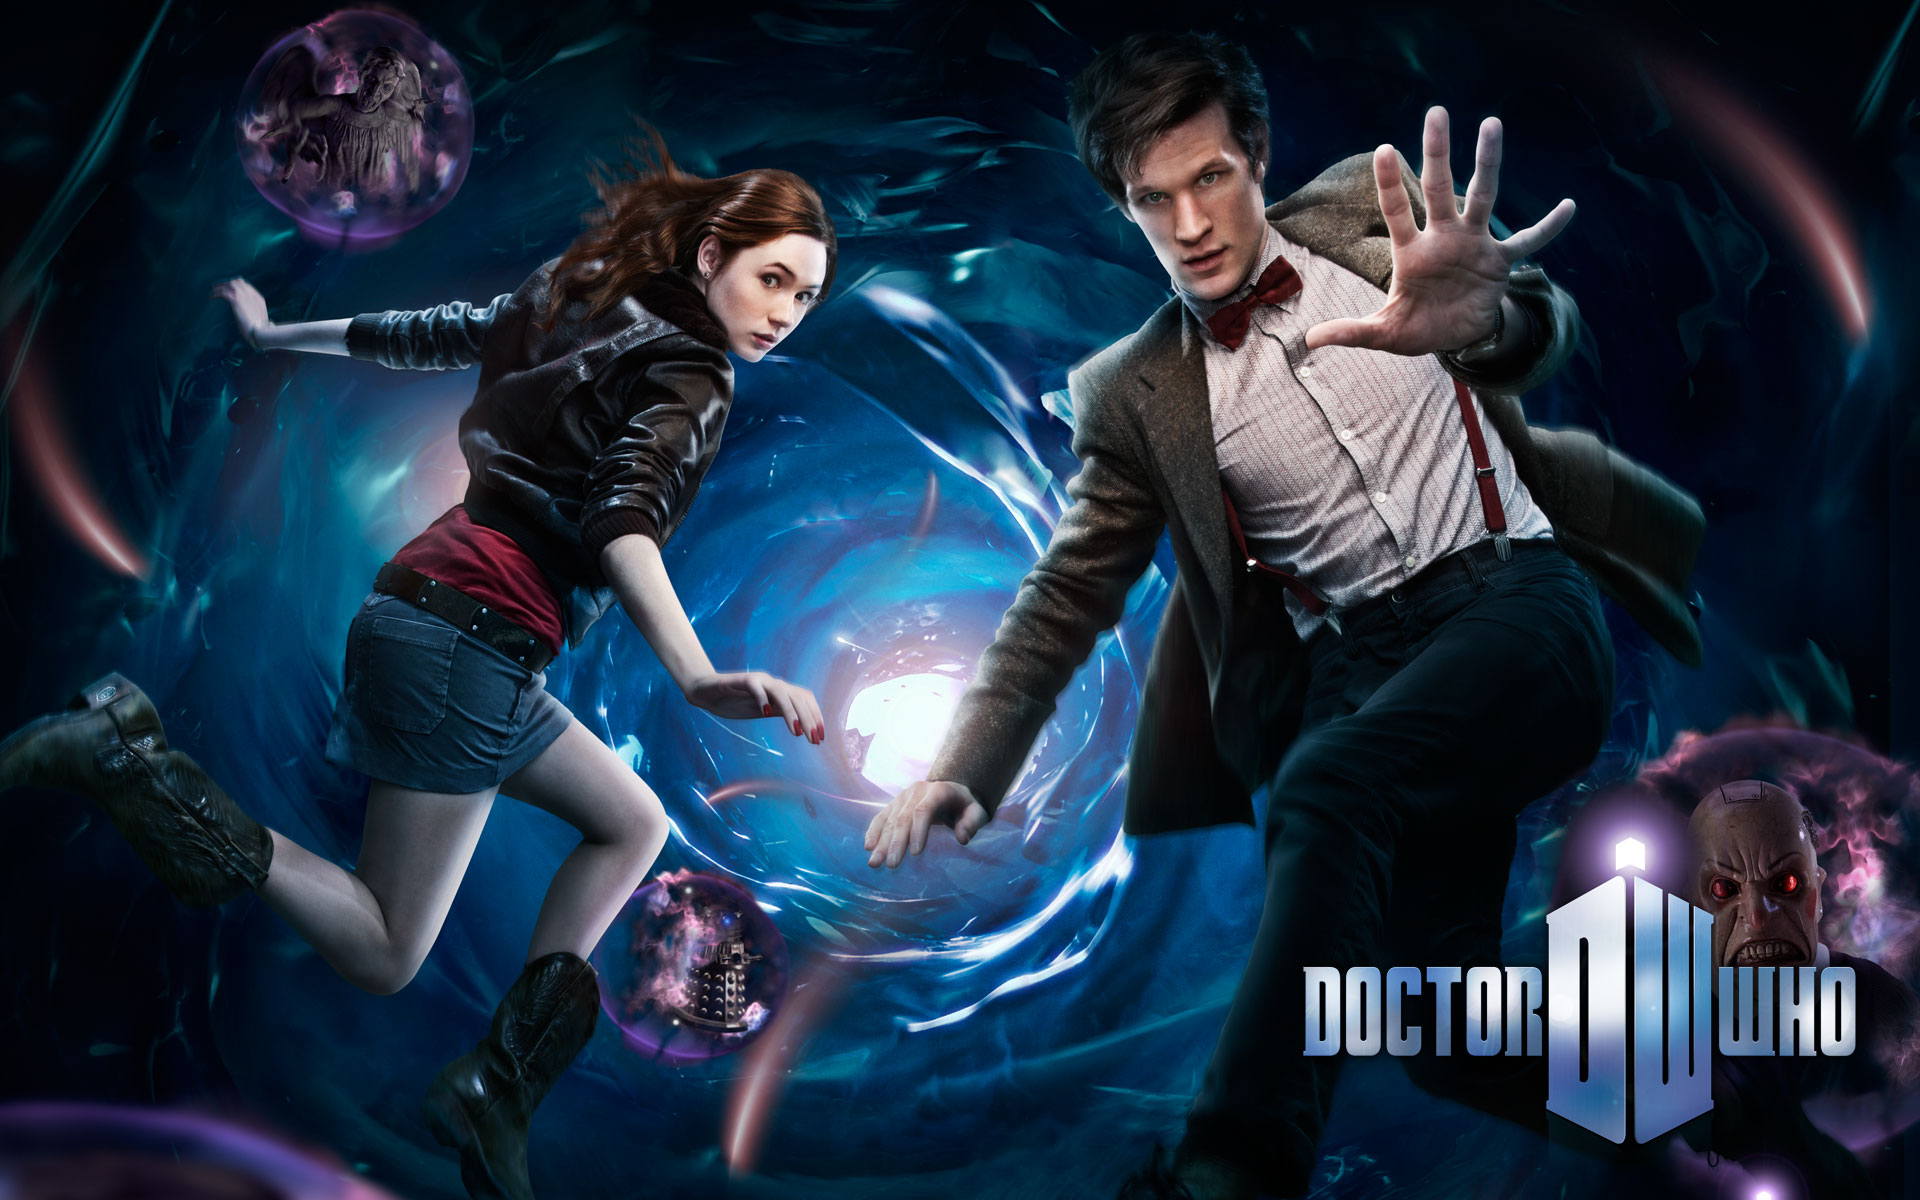 Doctor Who Wallpaper Imagebank Biz